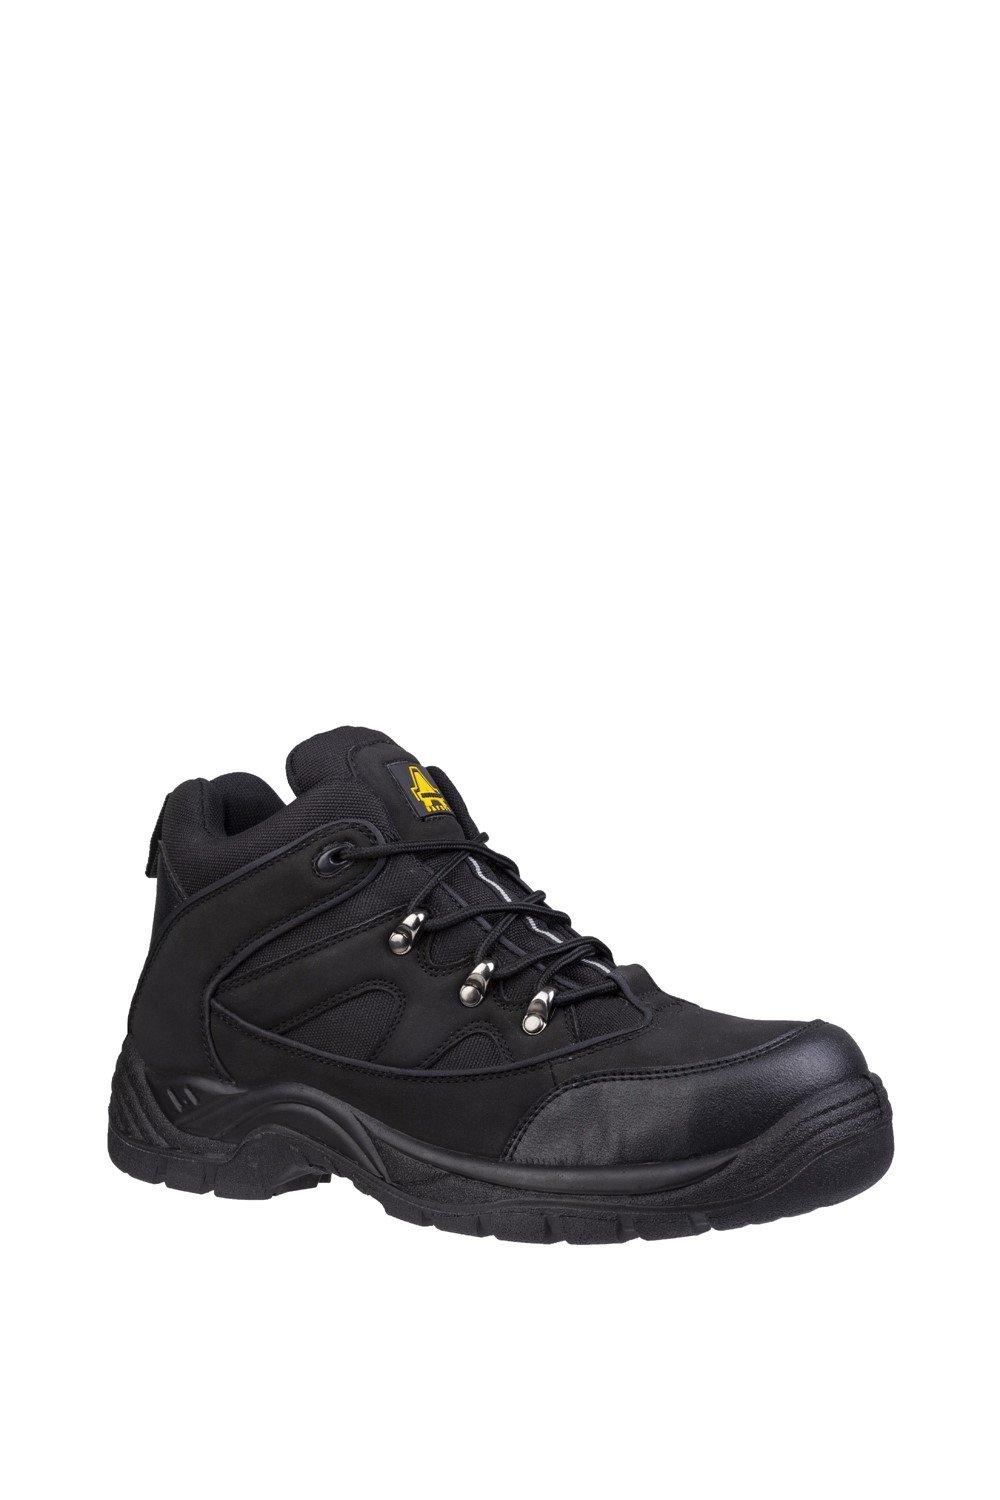 Защитные ботинки 'FS151' Amblers Safety, черный ботинки мужские рабочие со стальным носком легкие защитные нескользящие дышащие кроссовки для строительства стальной носок